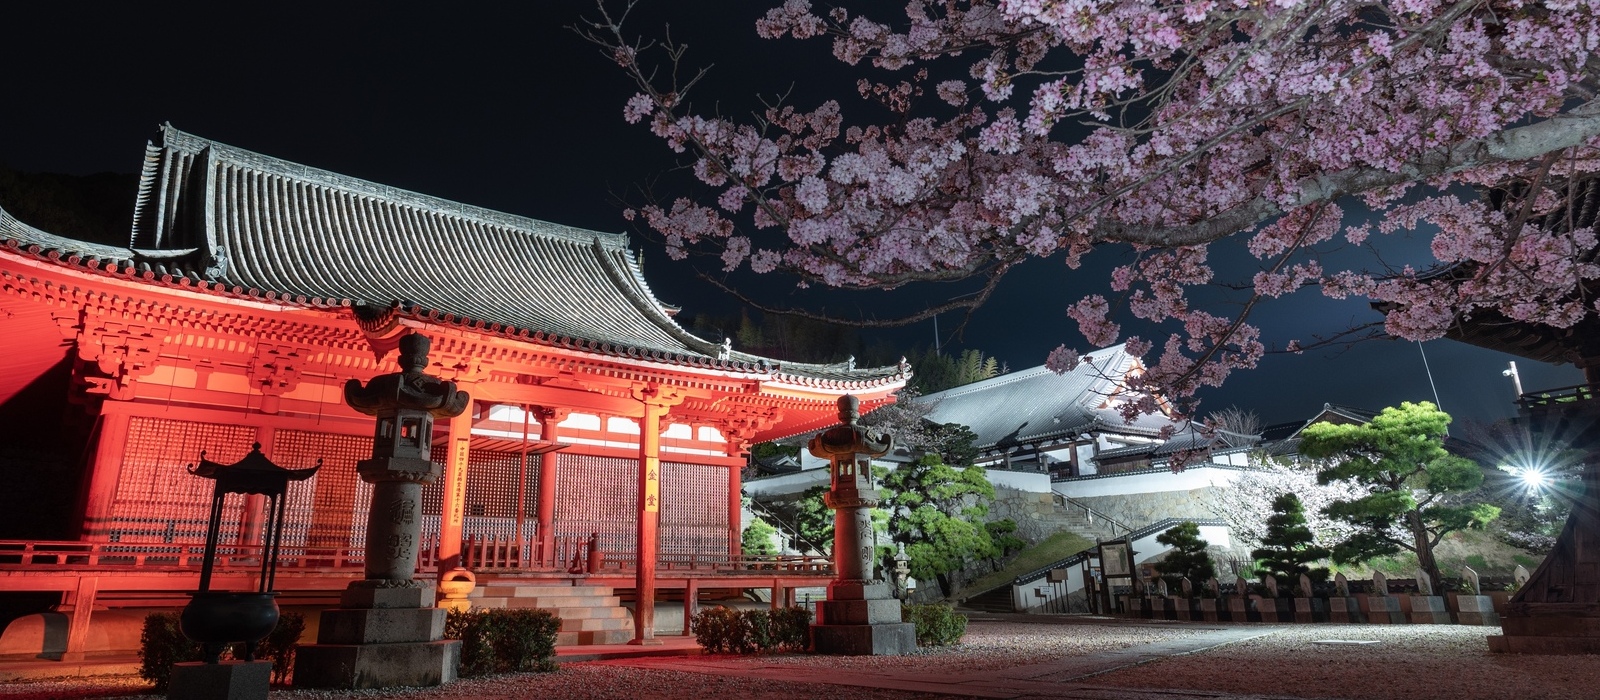 尾道の桜名所のひとつ西國寺では、夜桜をお楽しみいただけます！左の建物は、国重要文化財の金堂です。